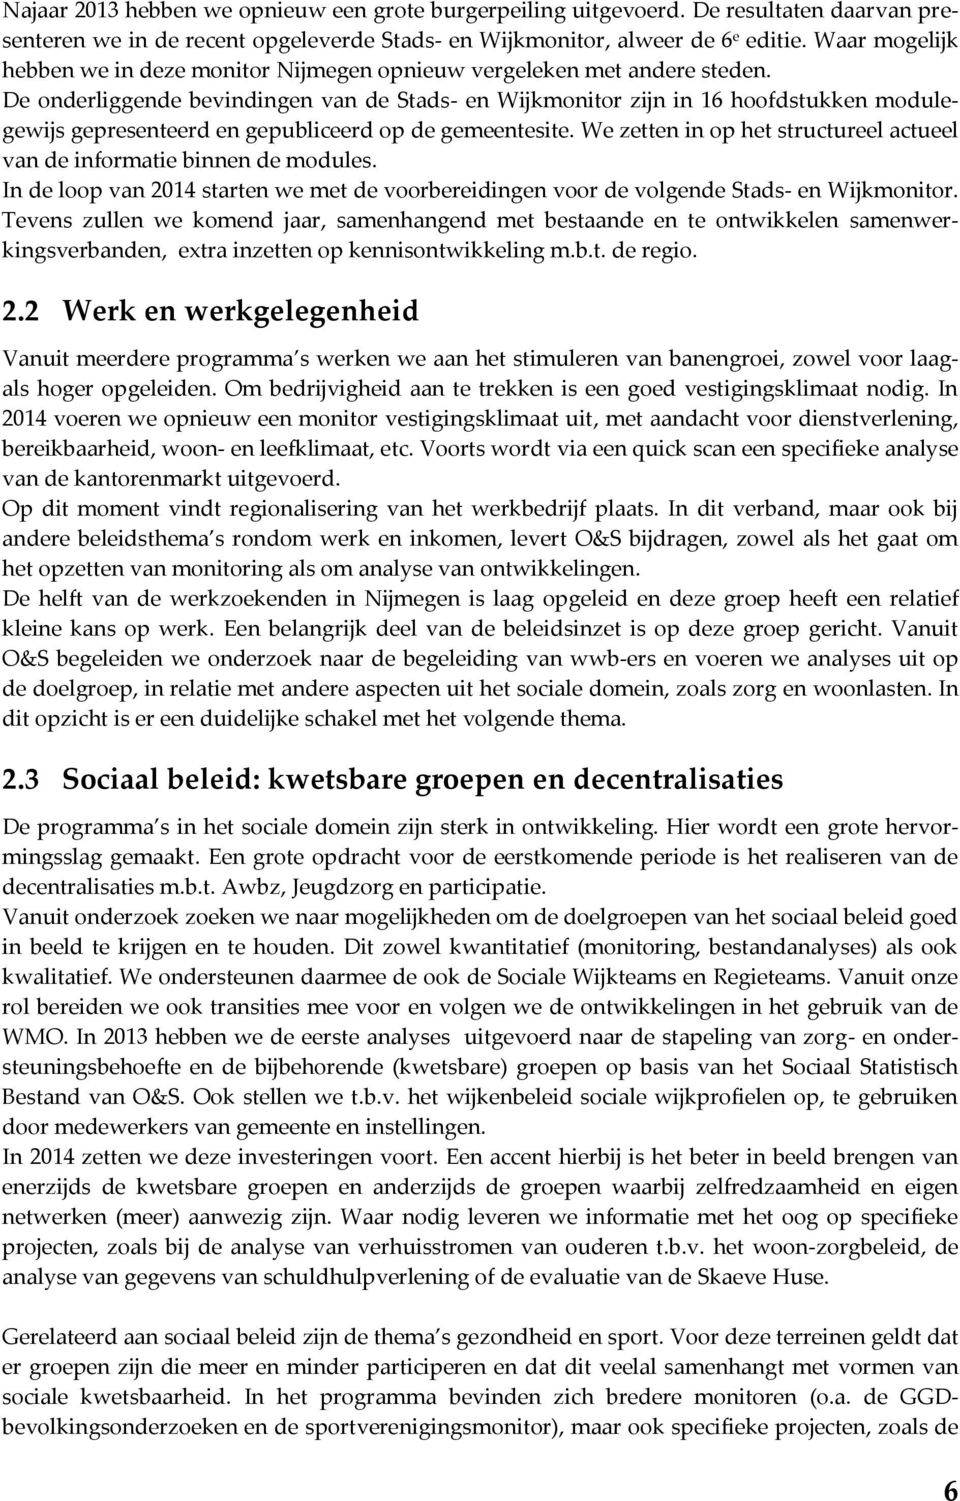 De onderliggende bevindingen van de Stads- en Wijkmonitor zijn in 16 hoofdstukken modulegewijs gepresenteerd en gepubliceerd op de gemeentesite.